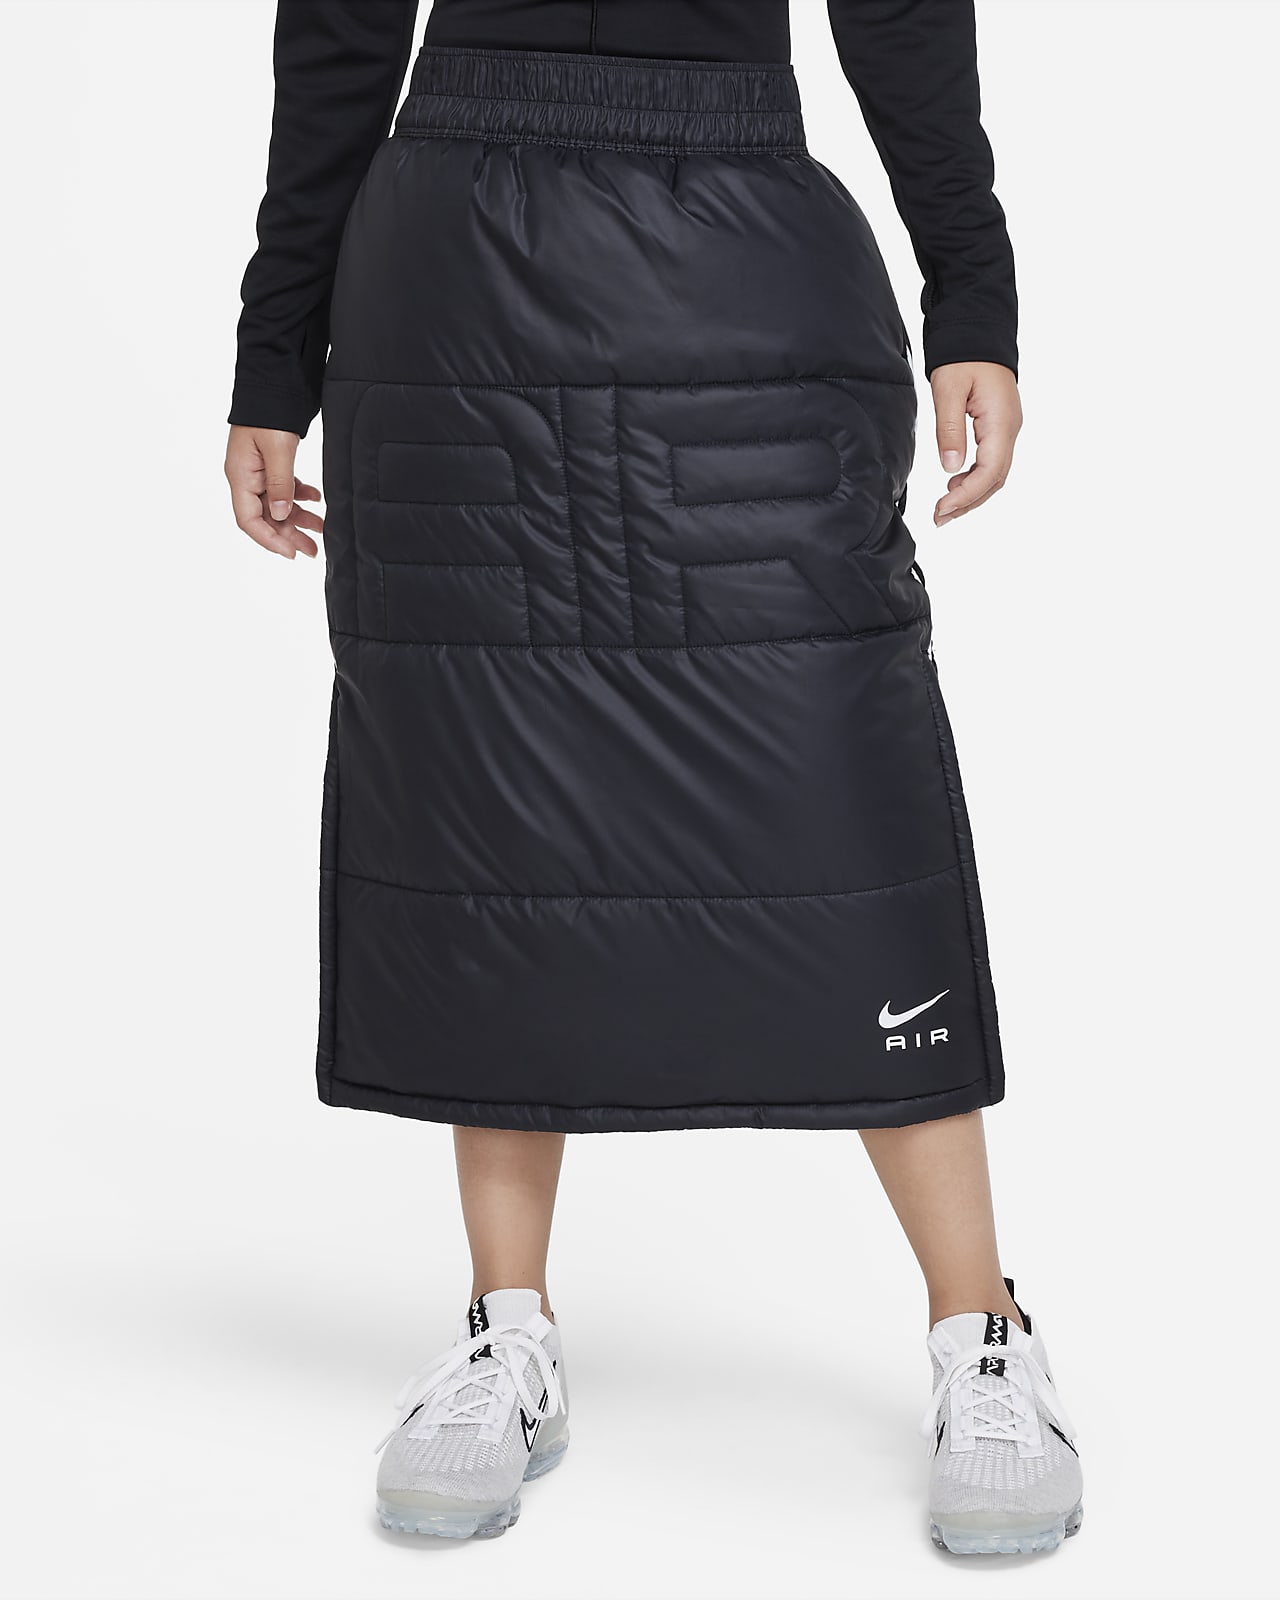 Nike Air Older Kids' (Girls') Synthetic-Fill Skirt